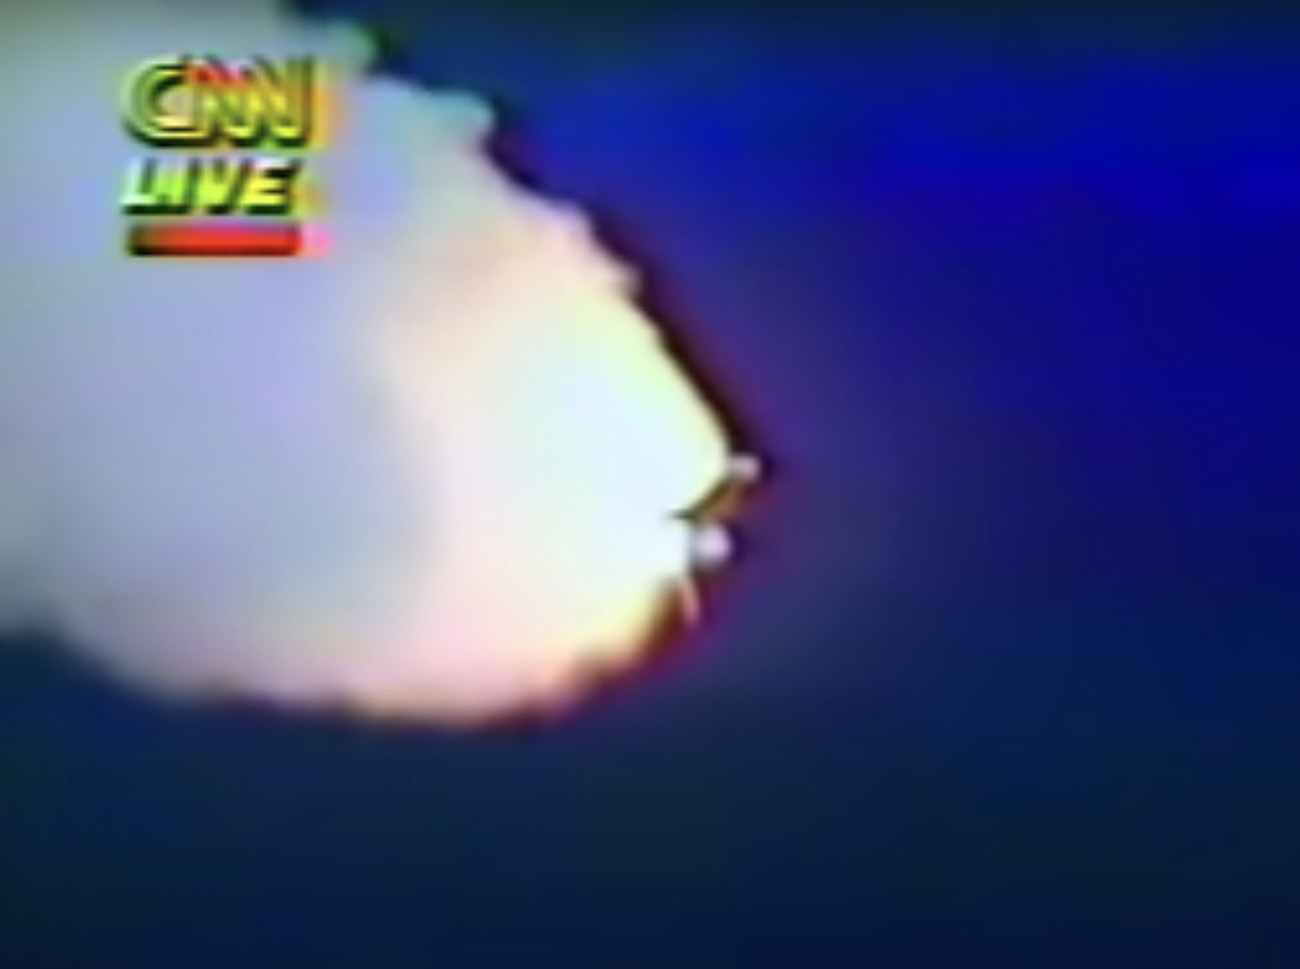 Σαν σήμερα 28 Ιανουαρίου το διαστημικό λεωφορείο «Τσάλεντζερ» εκρήγνυται 73 δευτερόλεπτα μετά την απογείωσή του